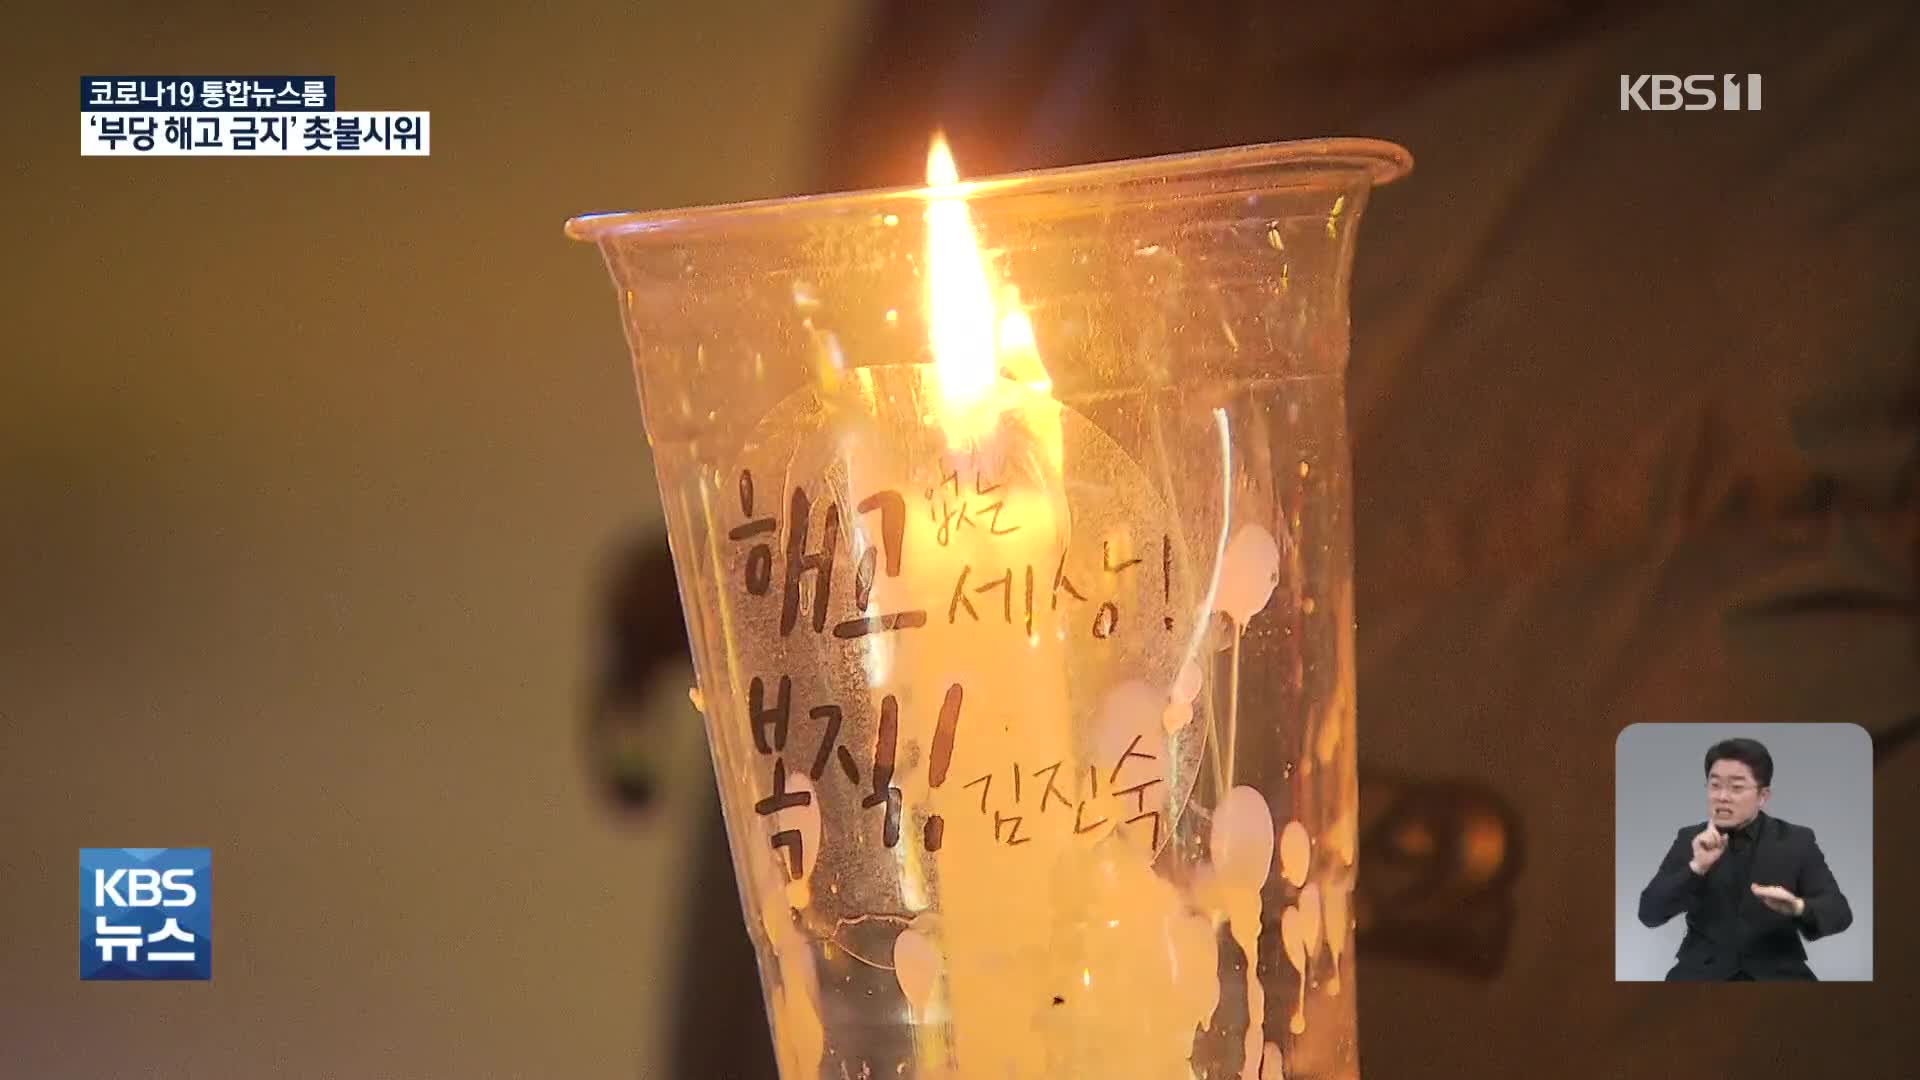 “부당 해고 금지” 서울 도심 촛불시위…경찰 “불법 집회”